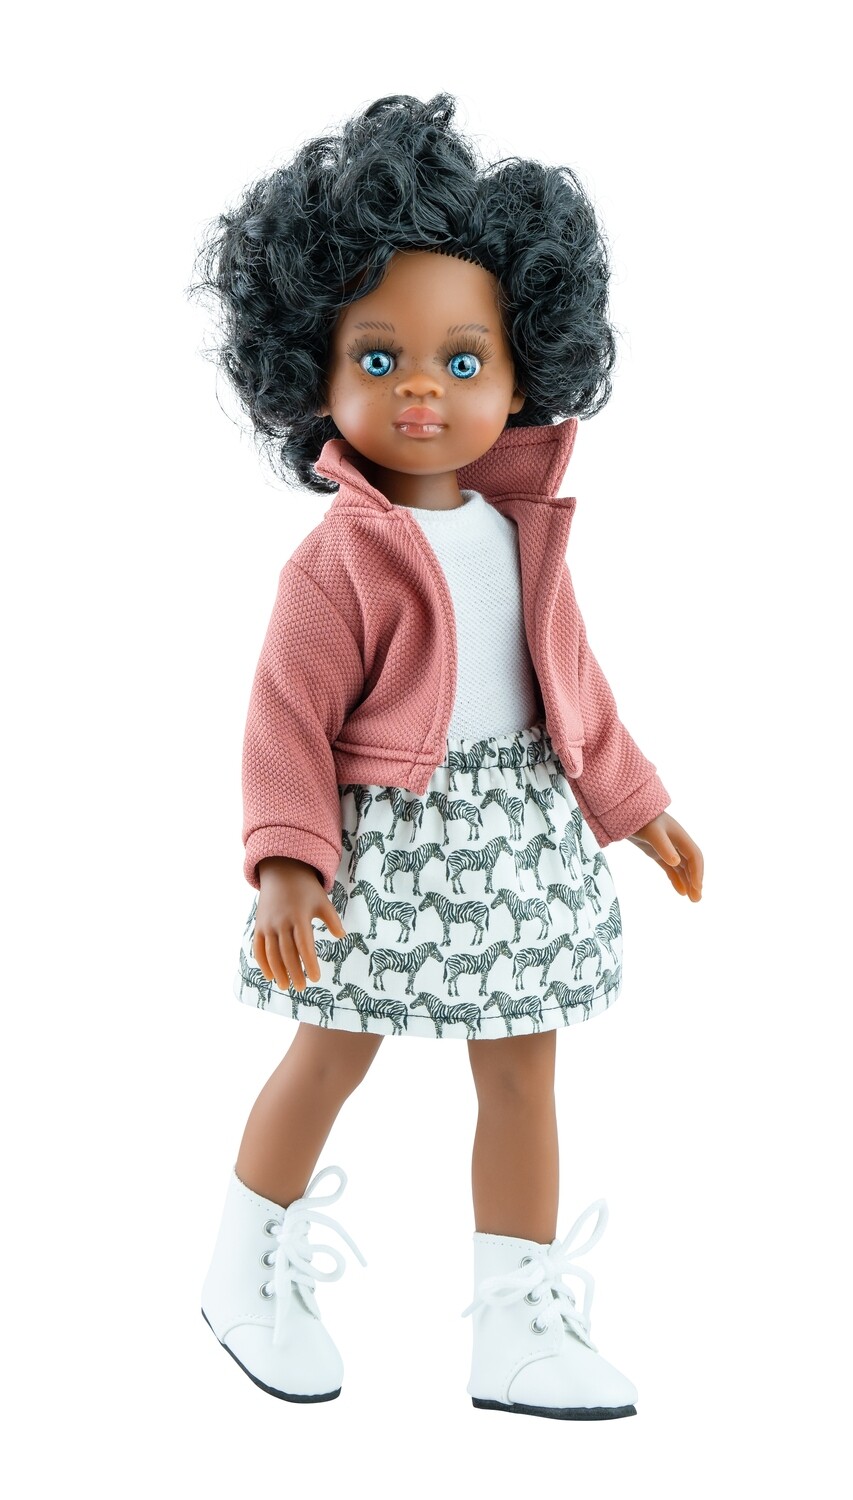 Кукла Нора с кудряшками с голубыми глазами Паола Рейна (Paola Reina) (в фабричном наряде), 34 см